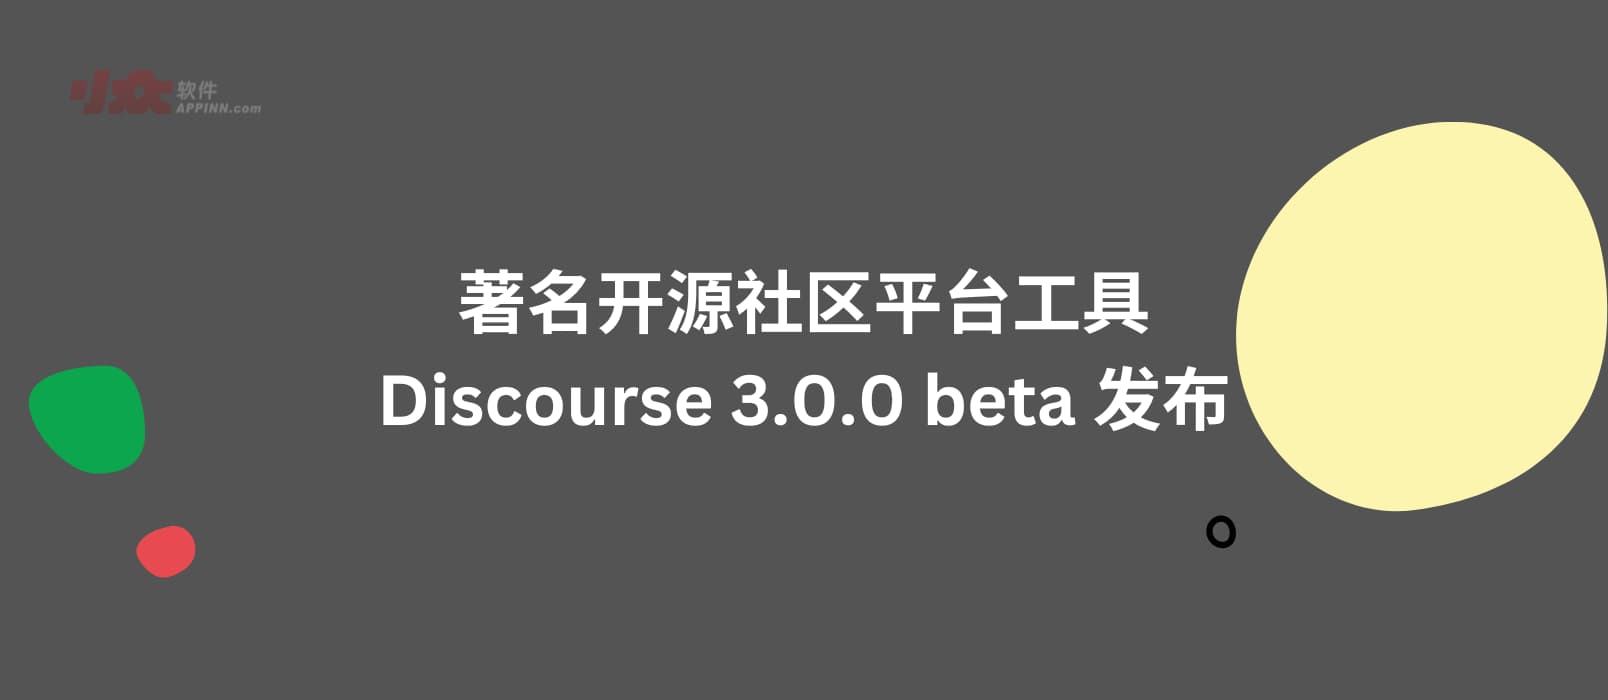 著名开源社区平台工具 Discourse 3.0.0 beta 发布